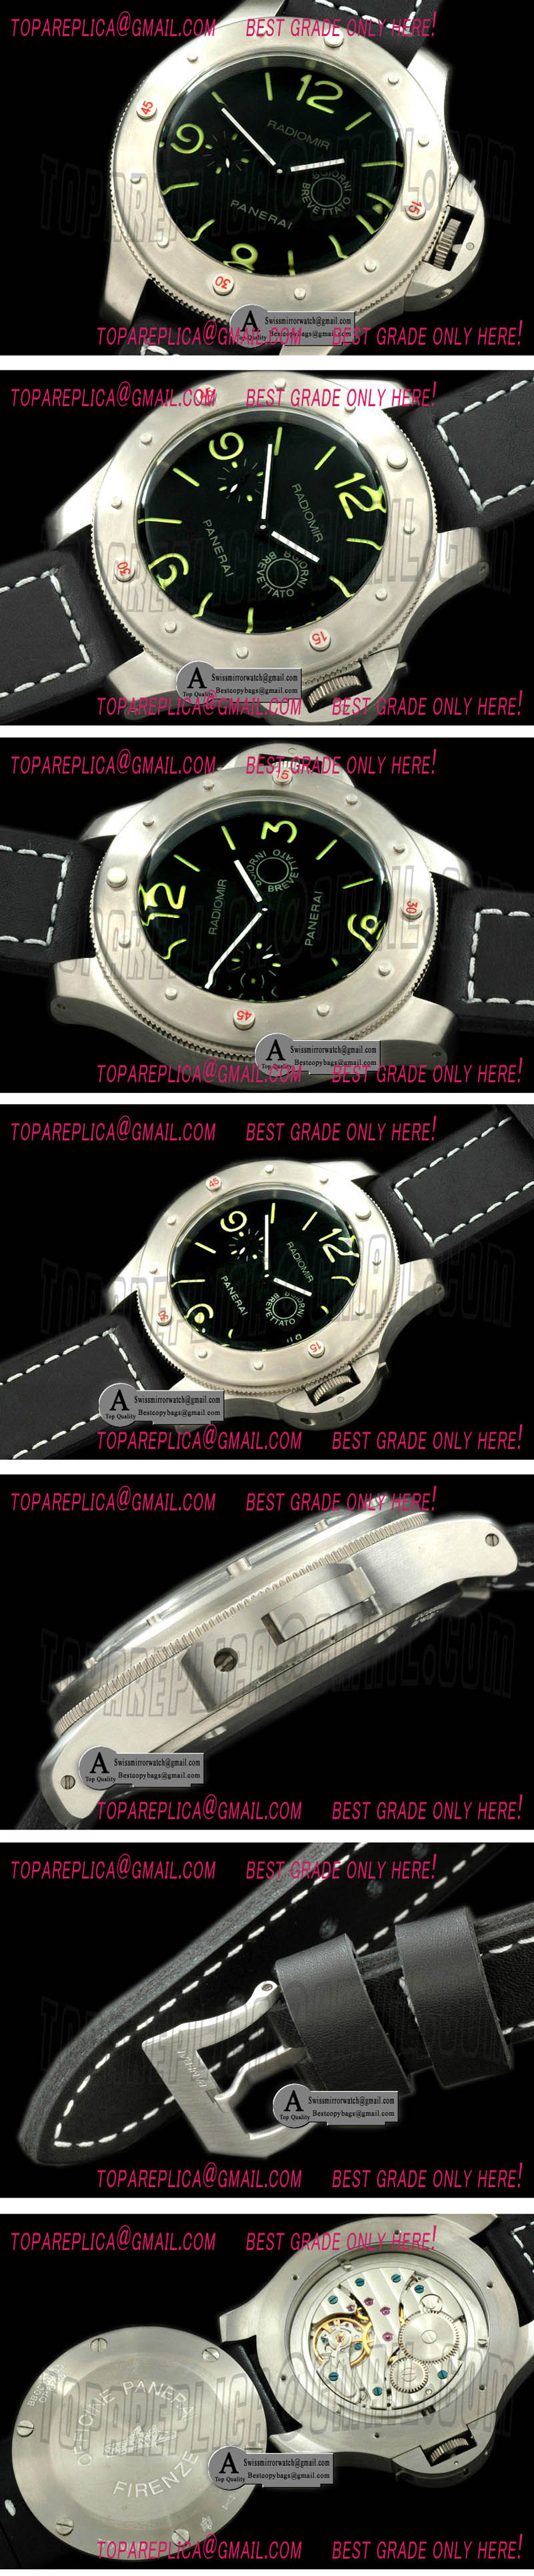 Panerai Pam 341 Radiomir Egiziano 60mm Titanium/Leather Asia 6497 Replica Watches